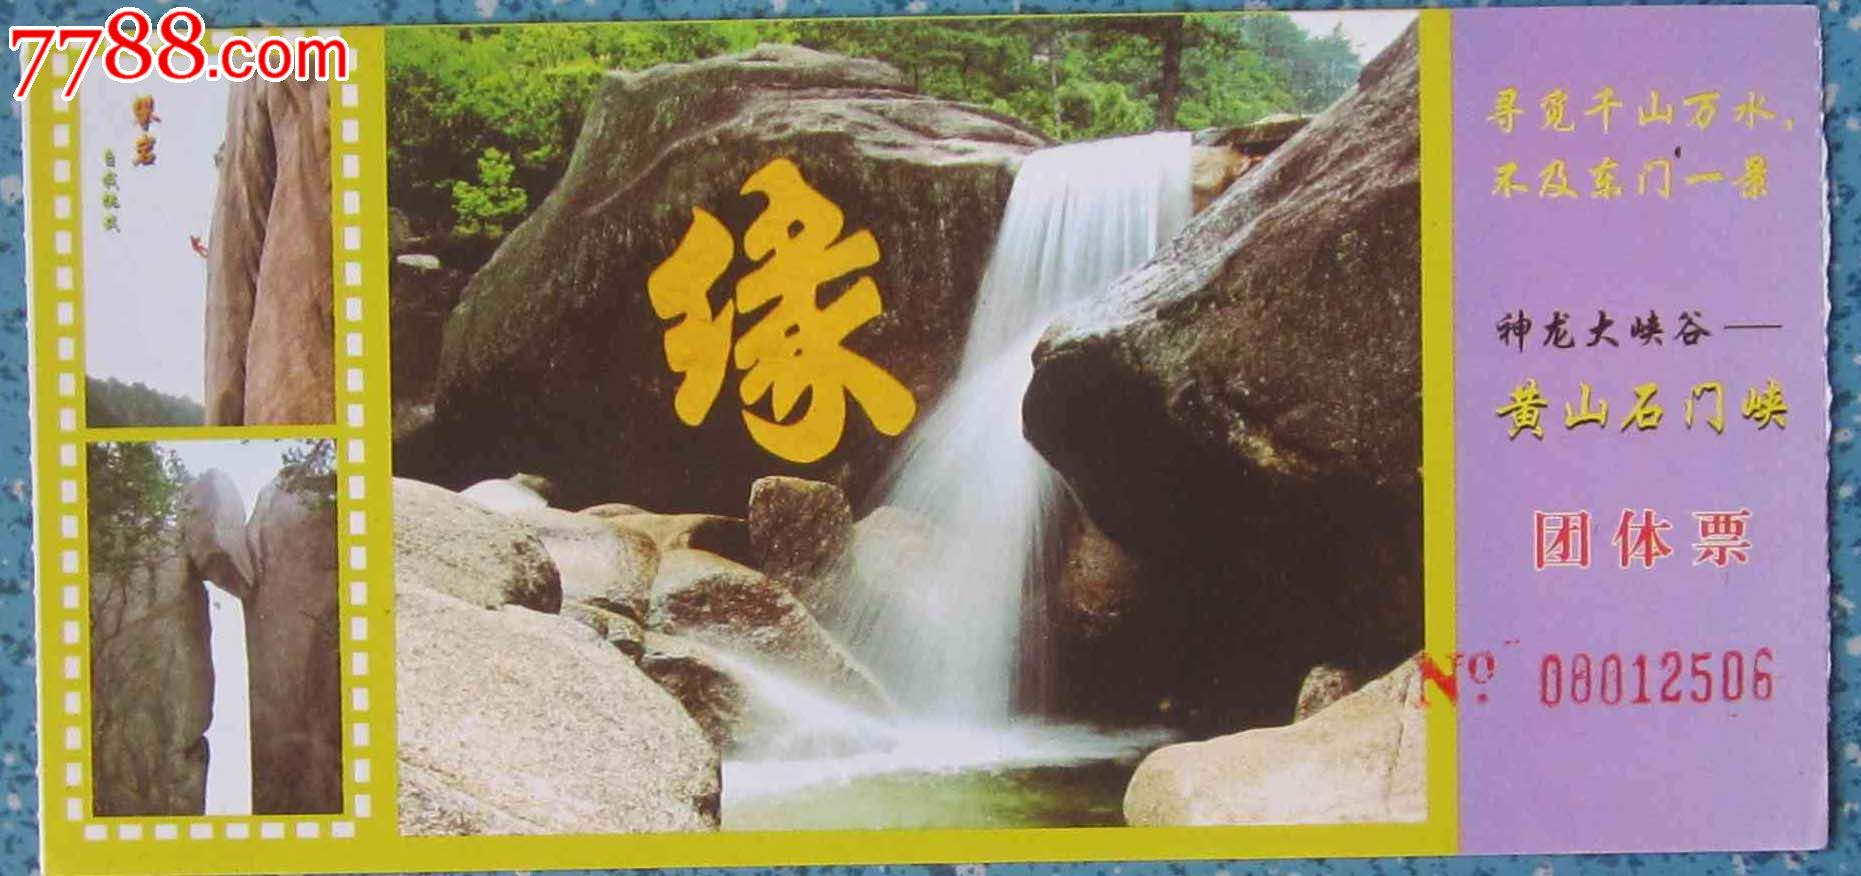 神龙大峡谷—黄山石门峡(门票)